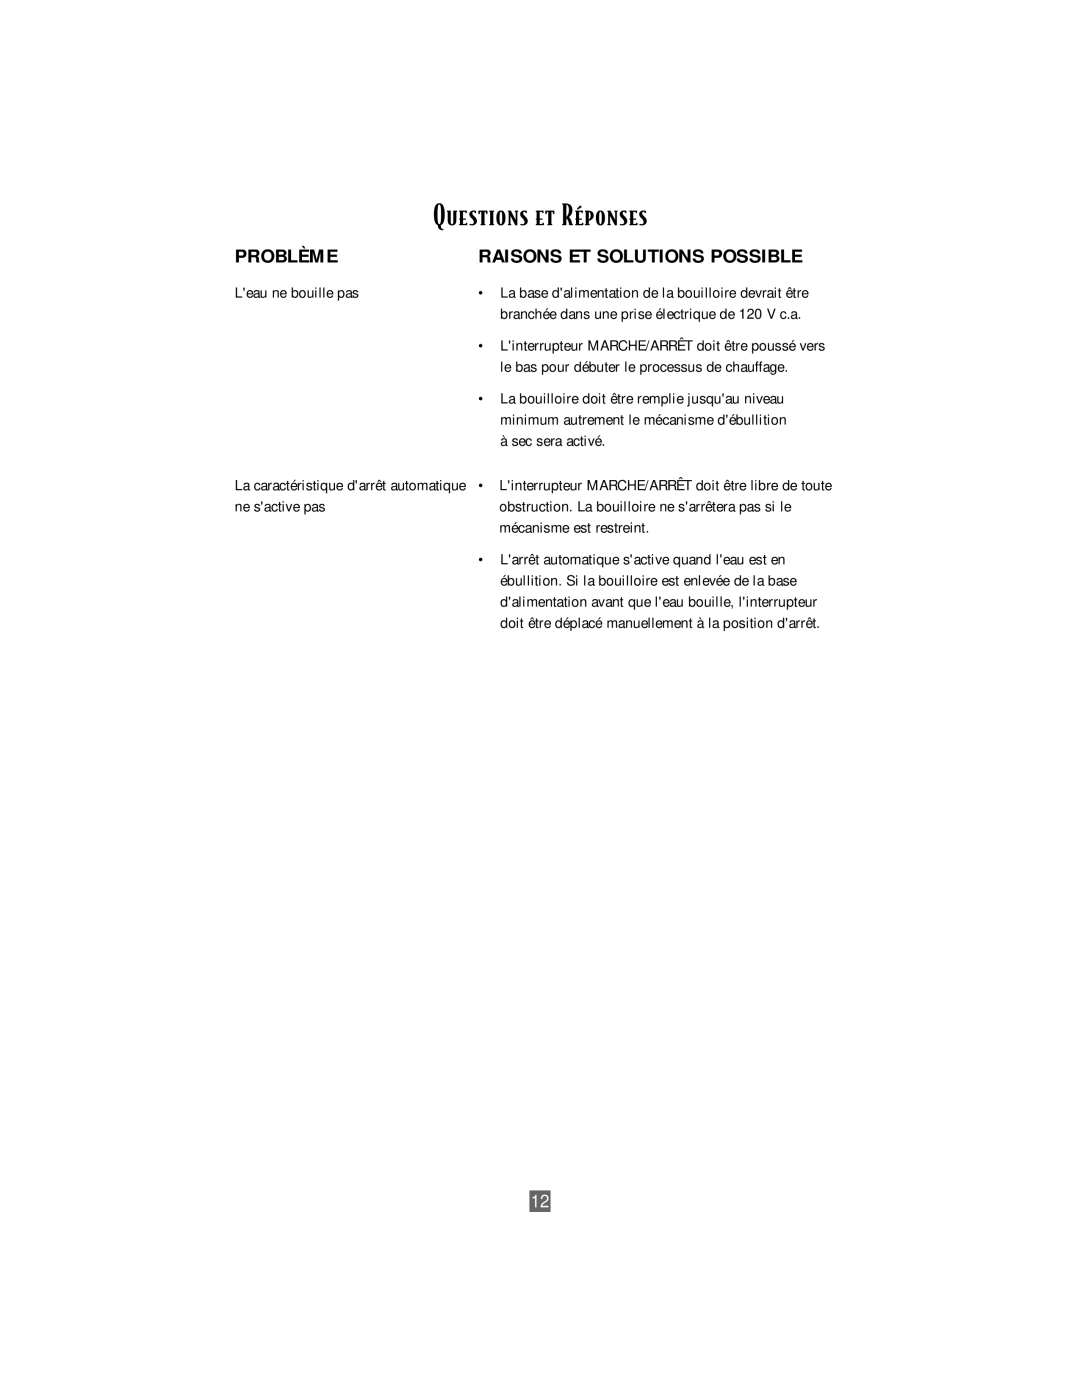 Oster 3207 instruction manual Questions et RŽponses, Problème, Raisons Et Solutions Possible 